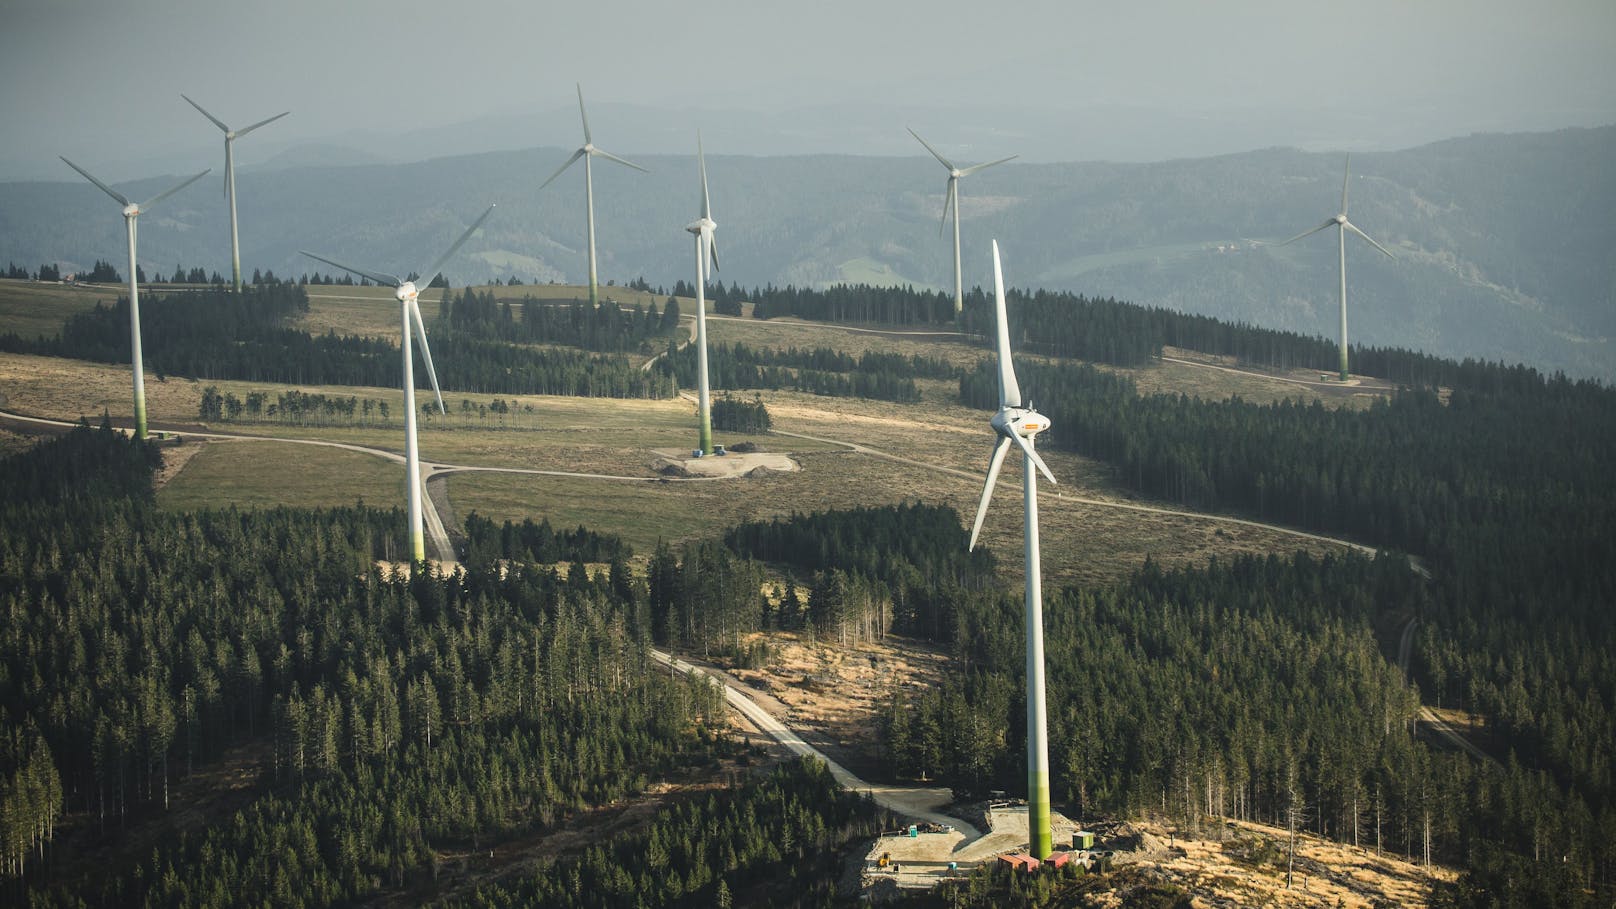 Der Windpark Steinriegel entstand in zwei Abschnitten. Die ersten Windräder drehen sich dort bereits seit 2005. Im Mai 2014 wurde mit der Erweiterung begonnen, am 17. Oktober fand die Inbetriebsnahme statt. Der Windpark besteht nun aus 21 Windkraftanlagen mit einer installierten Gesamtleistung von 38,3 Megawatt und produziert nun jährlich 79.000 Megawattstunden Ökostrom.